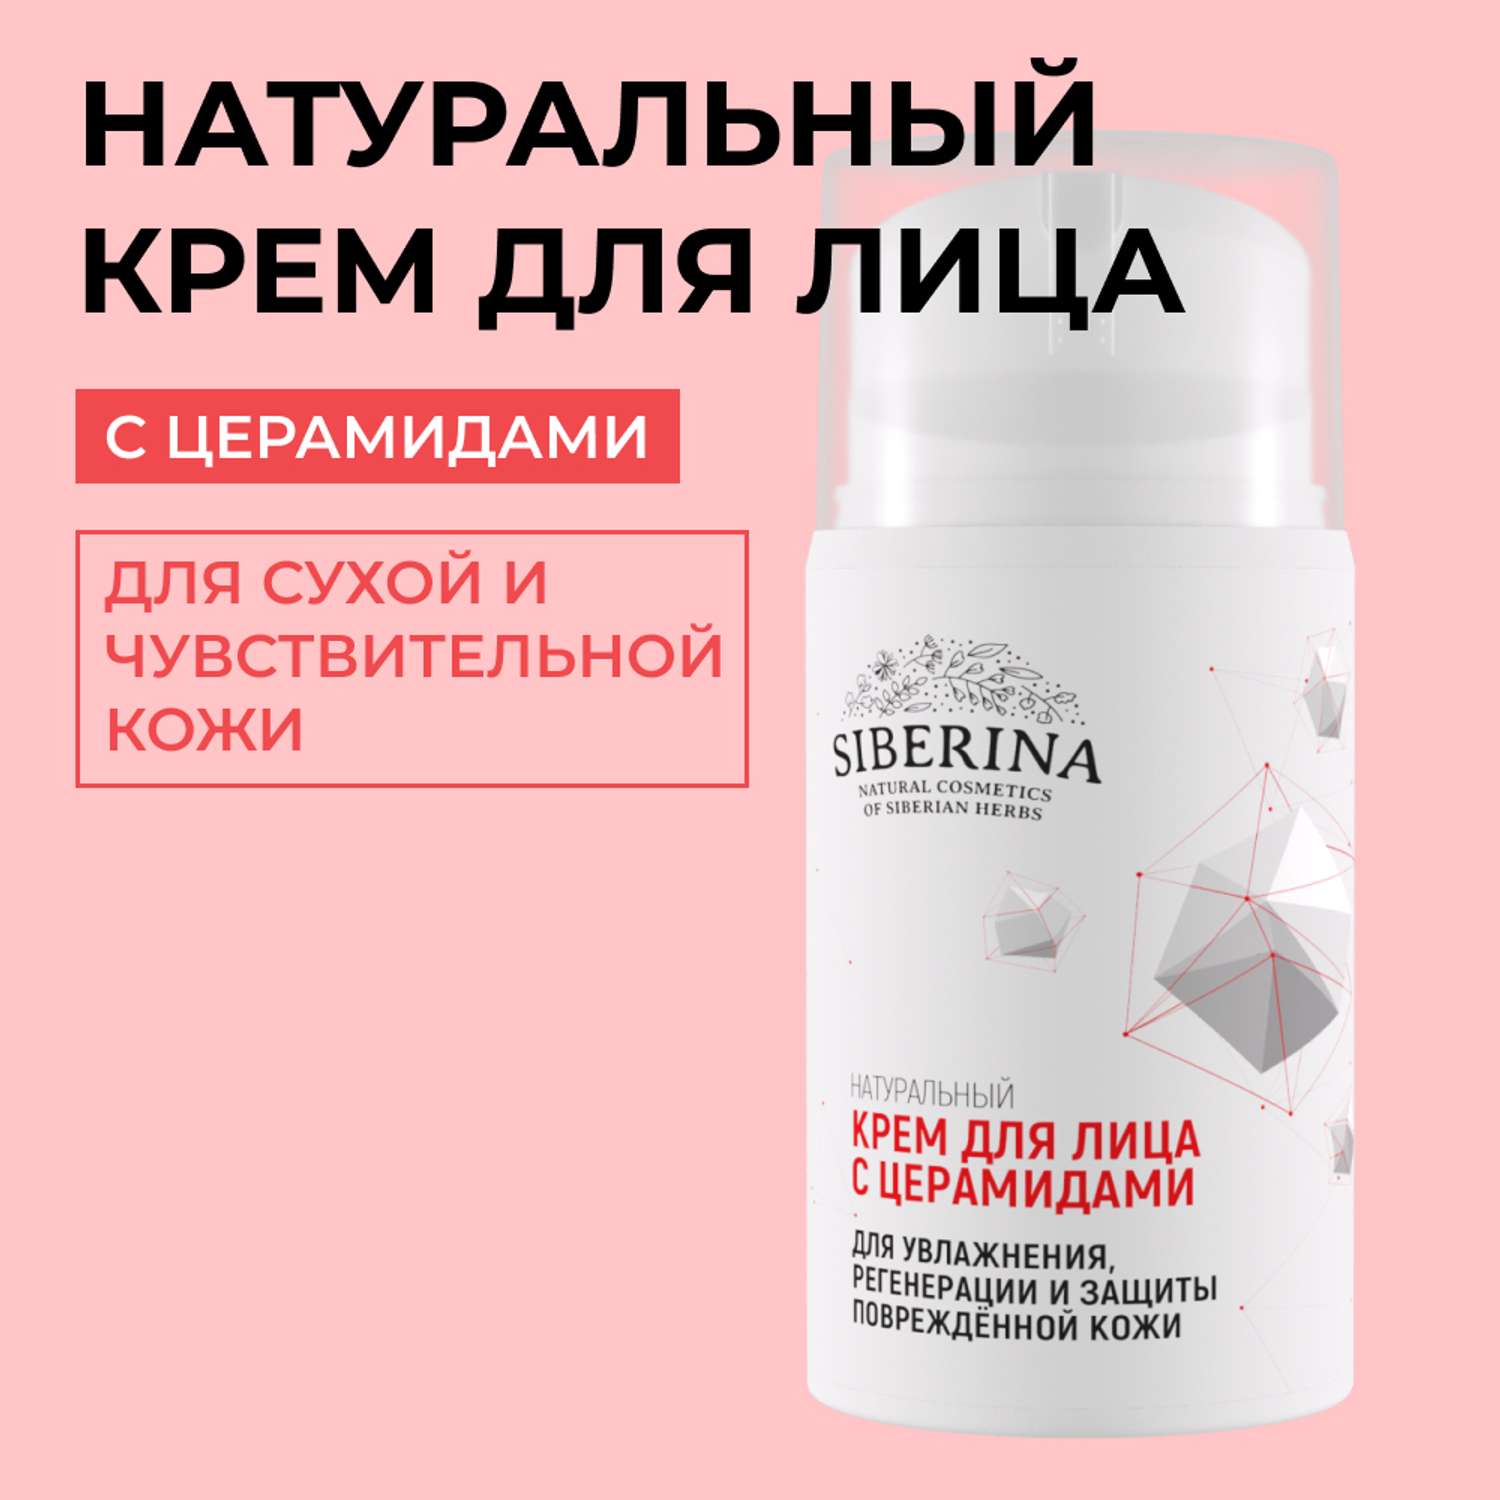 Крем для лица Siberina натуральный с церамидами для увлажнения регенерации и защиты повреждённой кожи 50 мл - фото 1